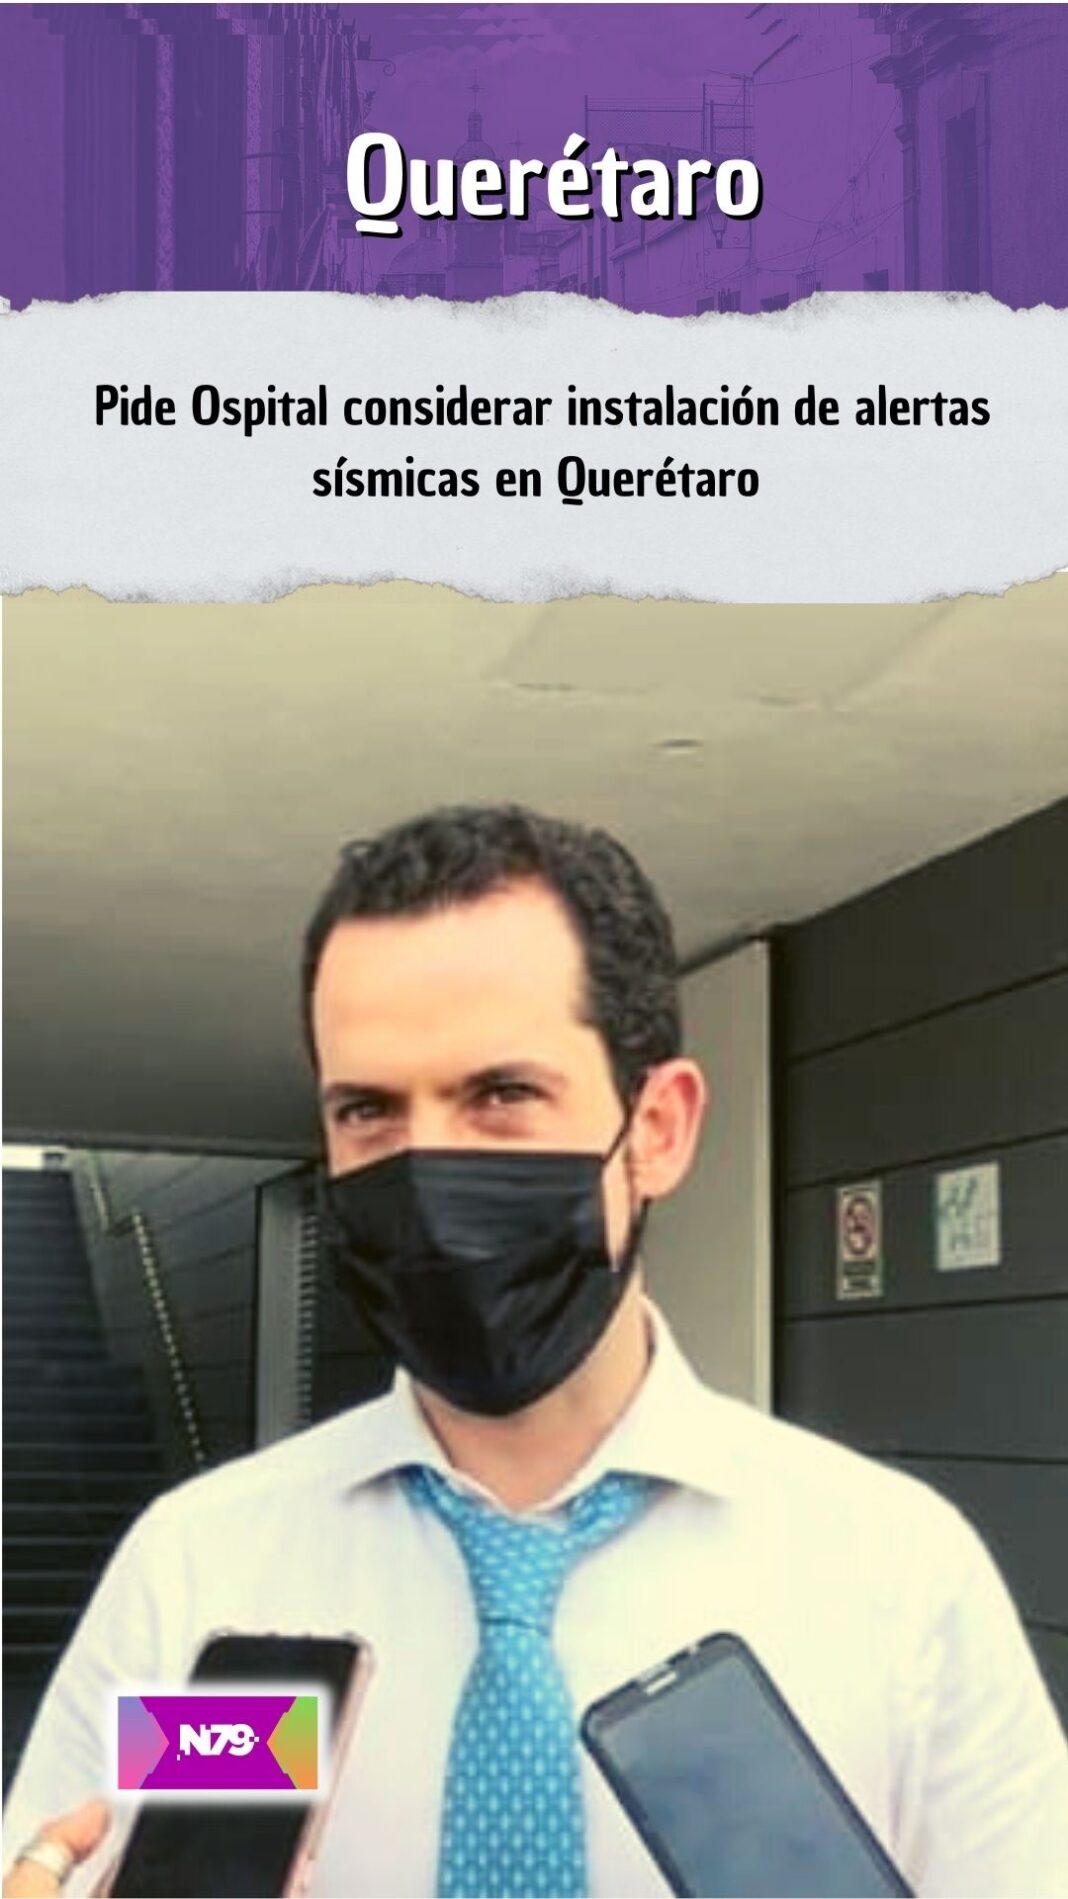 Pide Ospital considerar instalación de alertas sísmicas en Querétaro